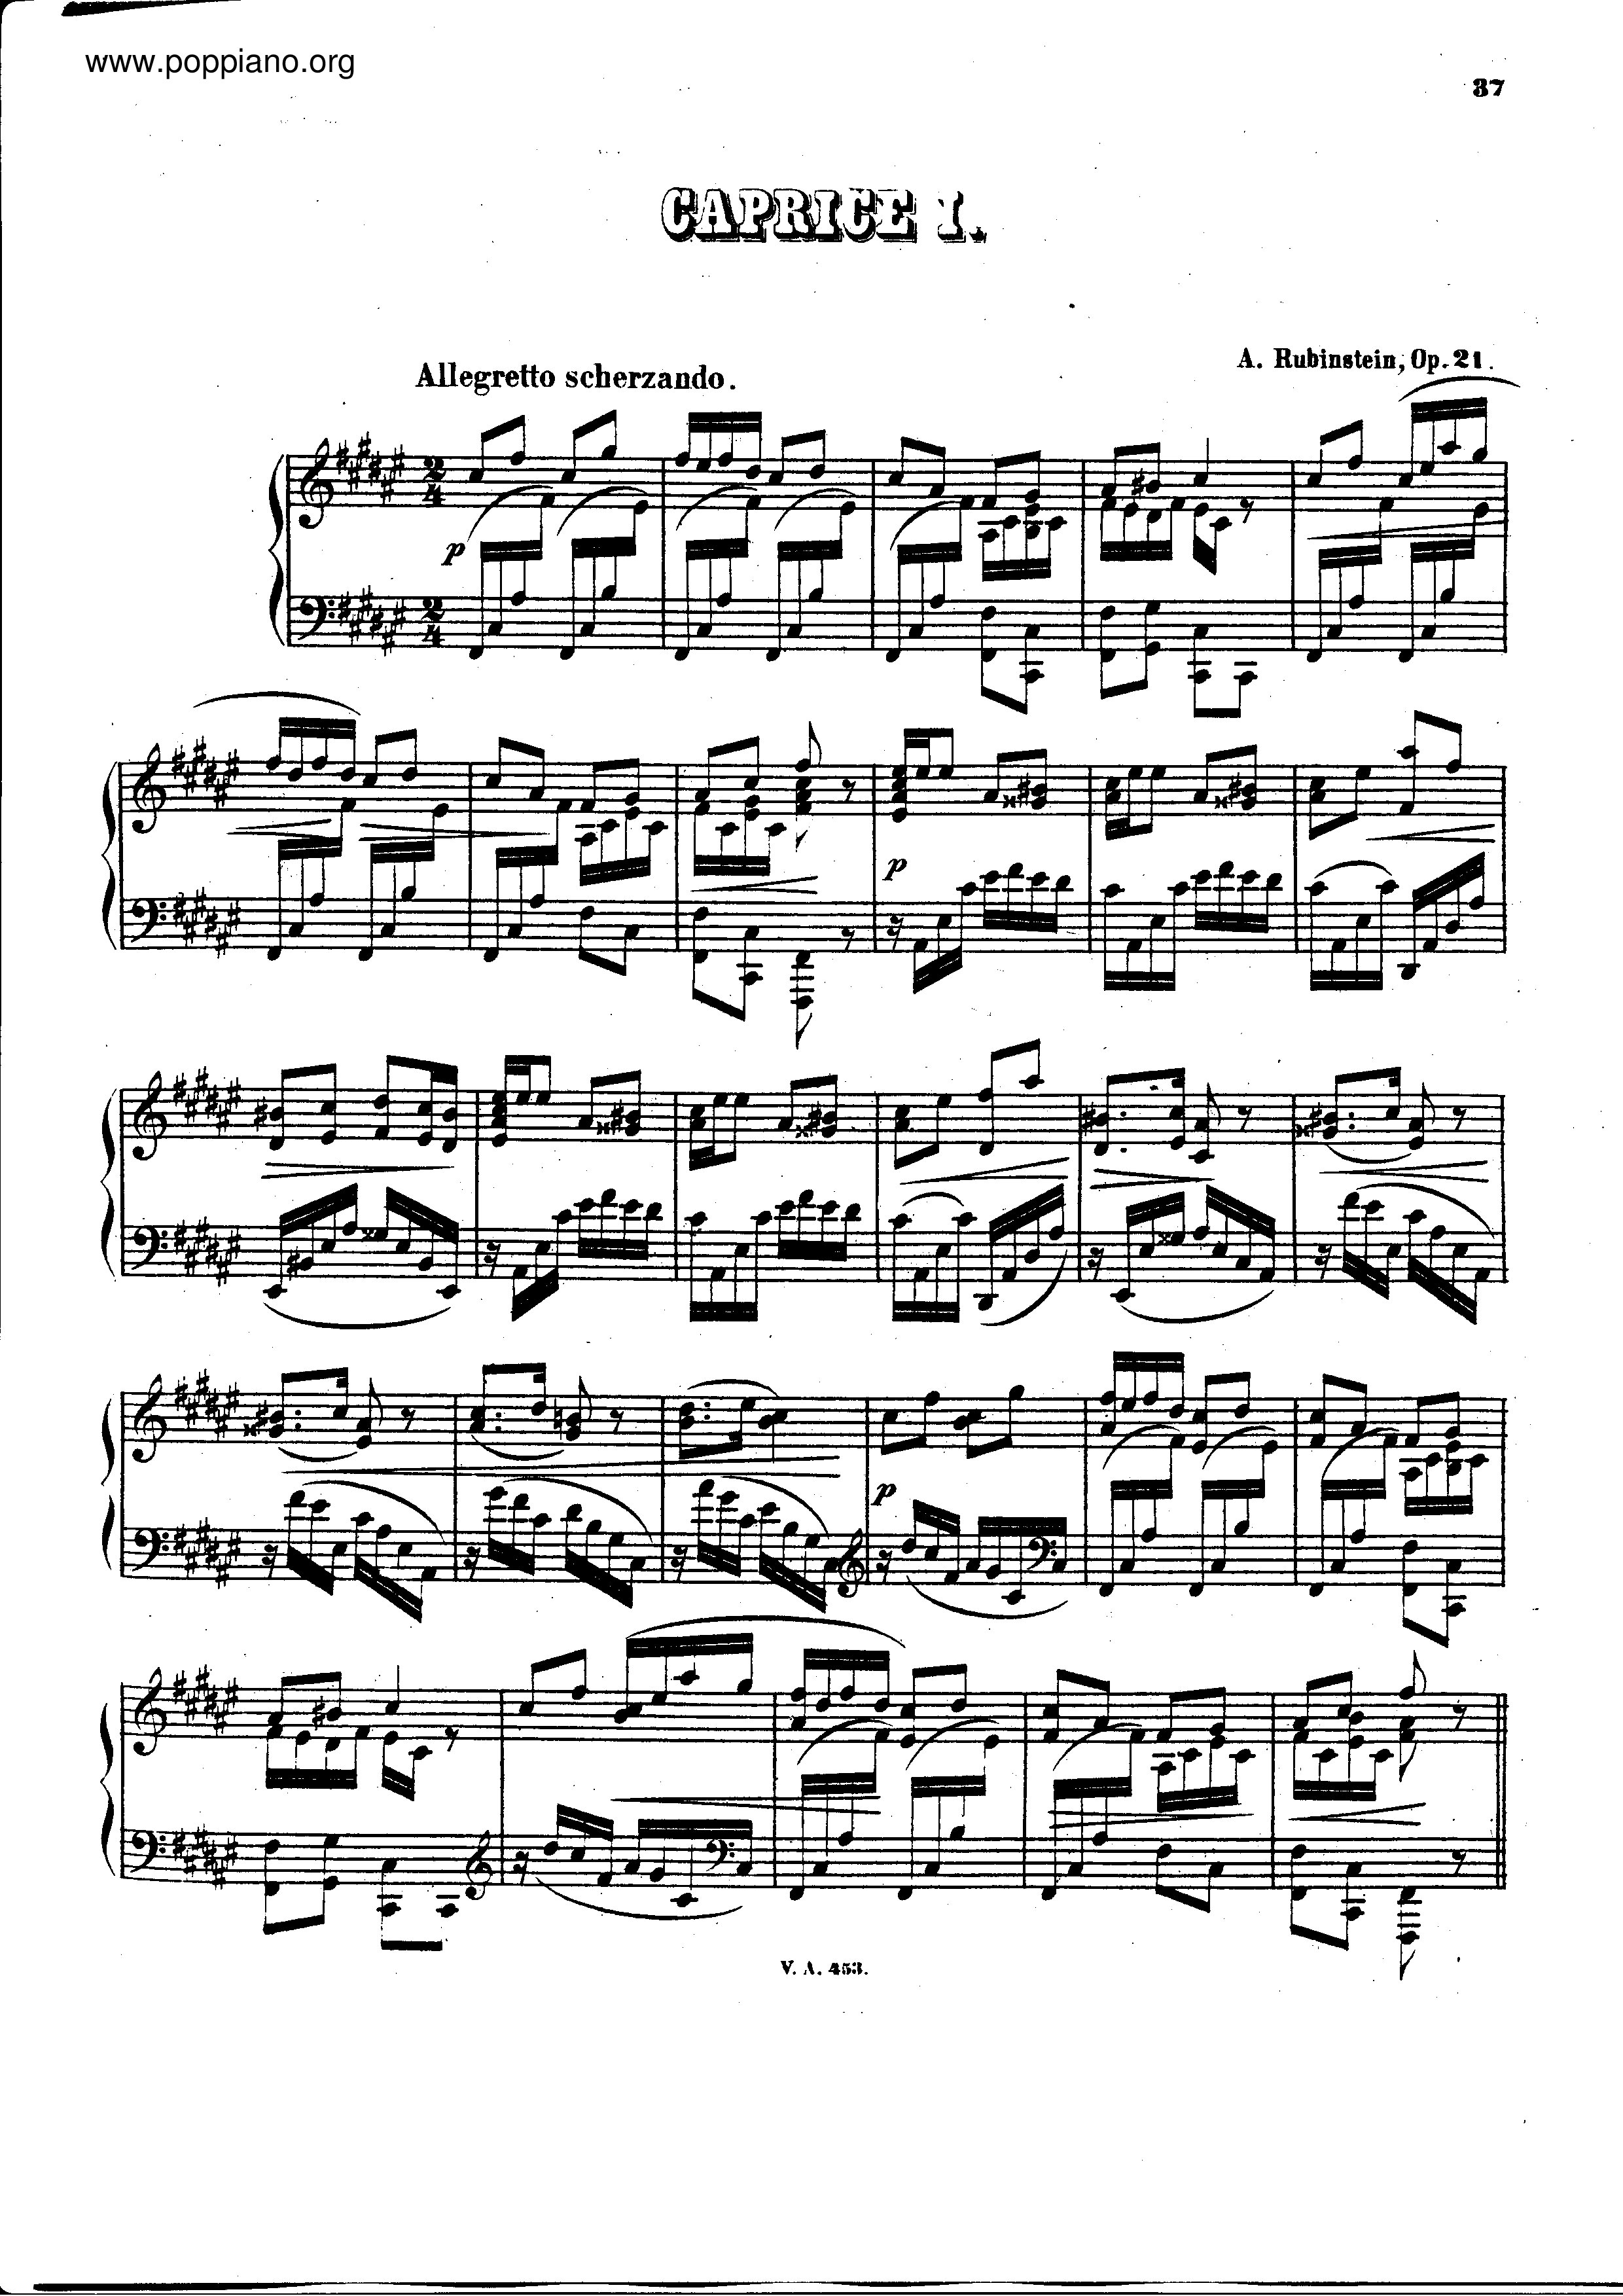 3 Caprices, Op.21ピアノ譜